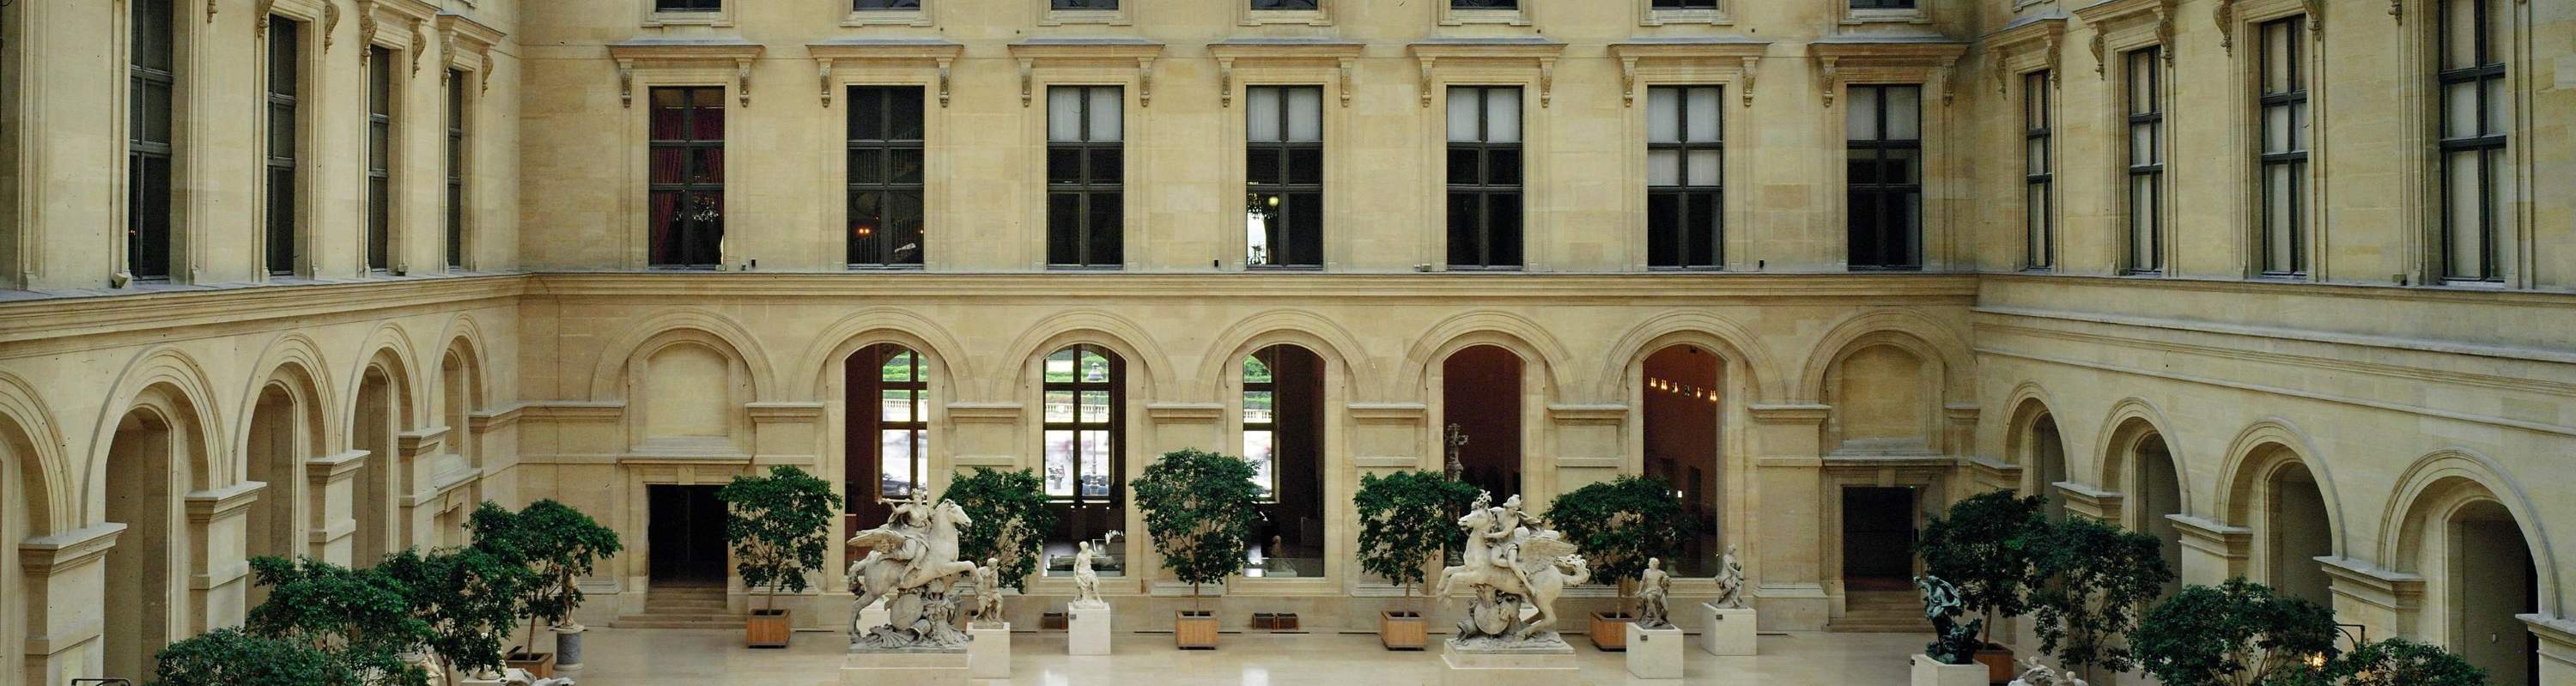 巴黎盧浮宮博物館內部